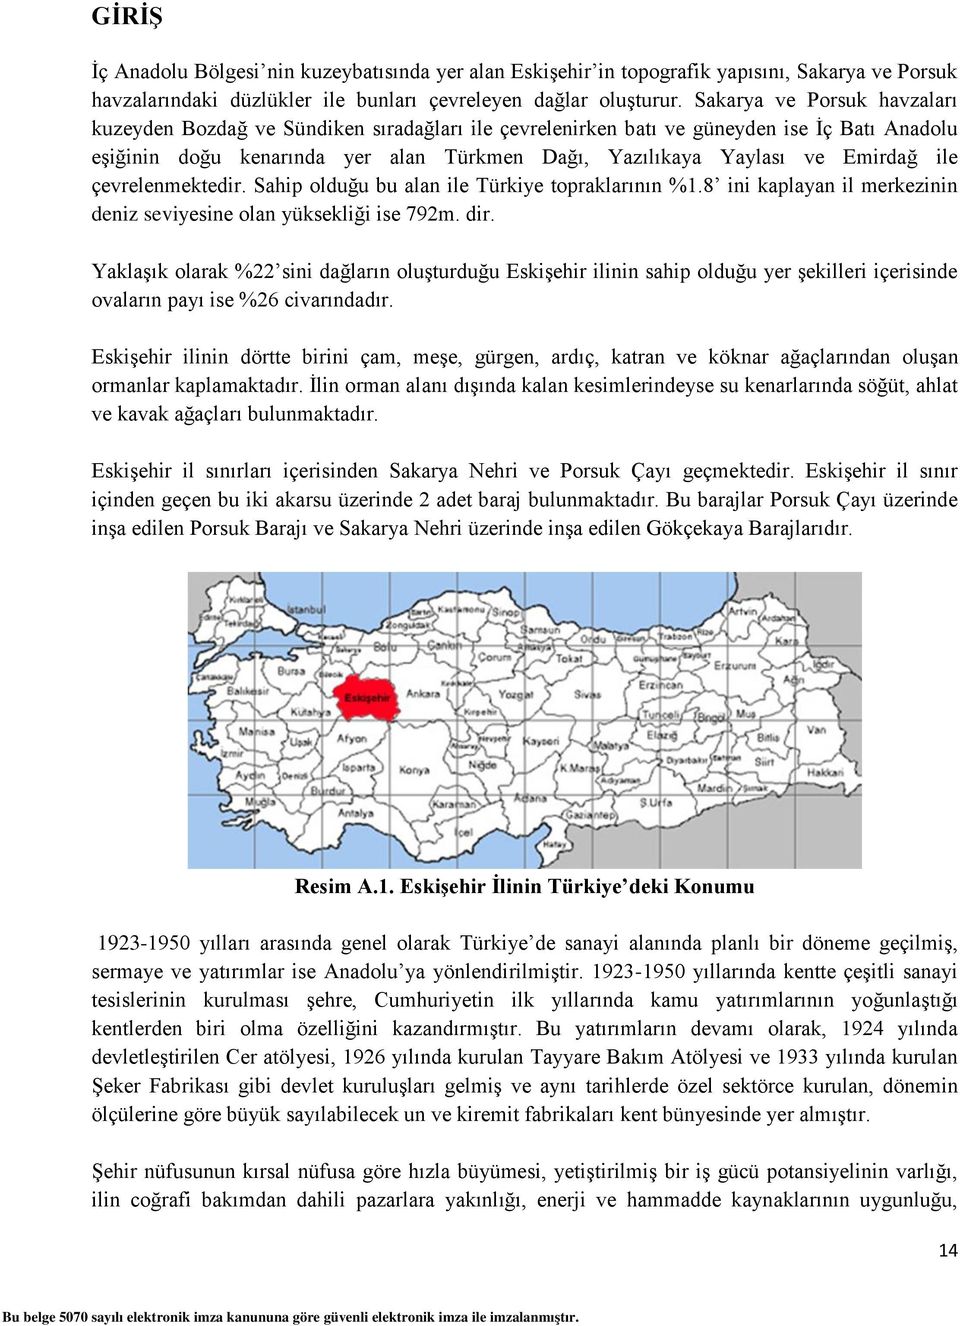 ile çevrelenmektedir. Sahip olduğu bu alan ile Türkiye topraklarının %1.8 ini kaplayan il merkezinin deniz seviyesine olan yüksekliği ise 792m. dir.